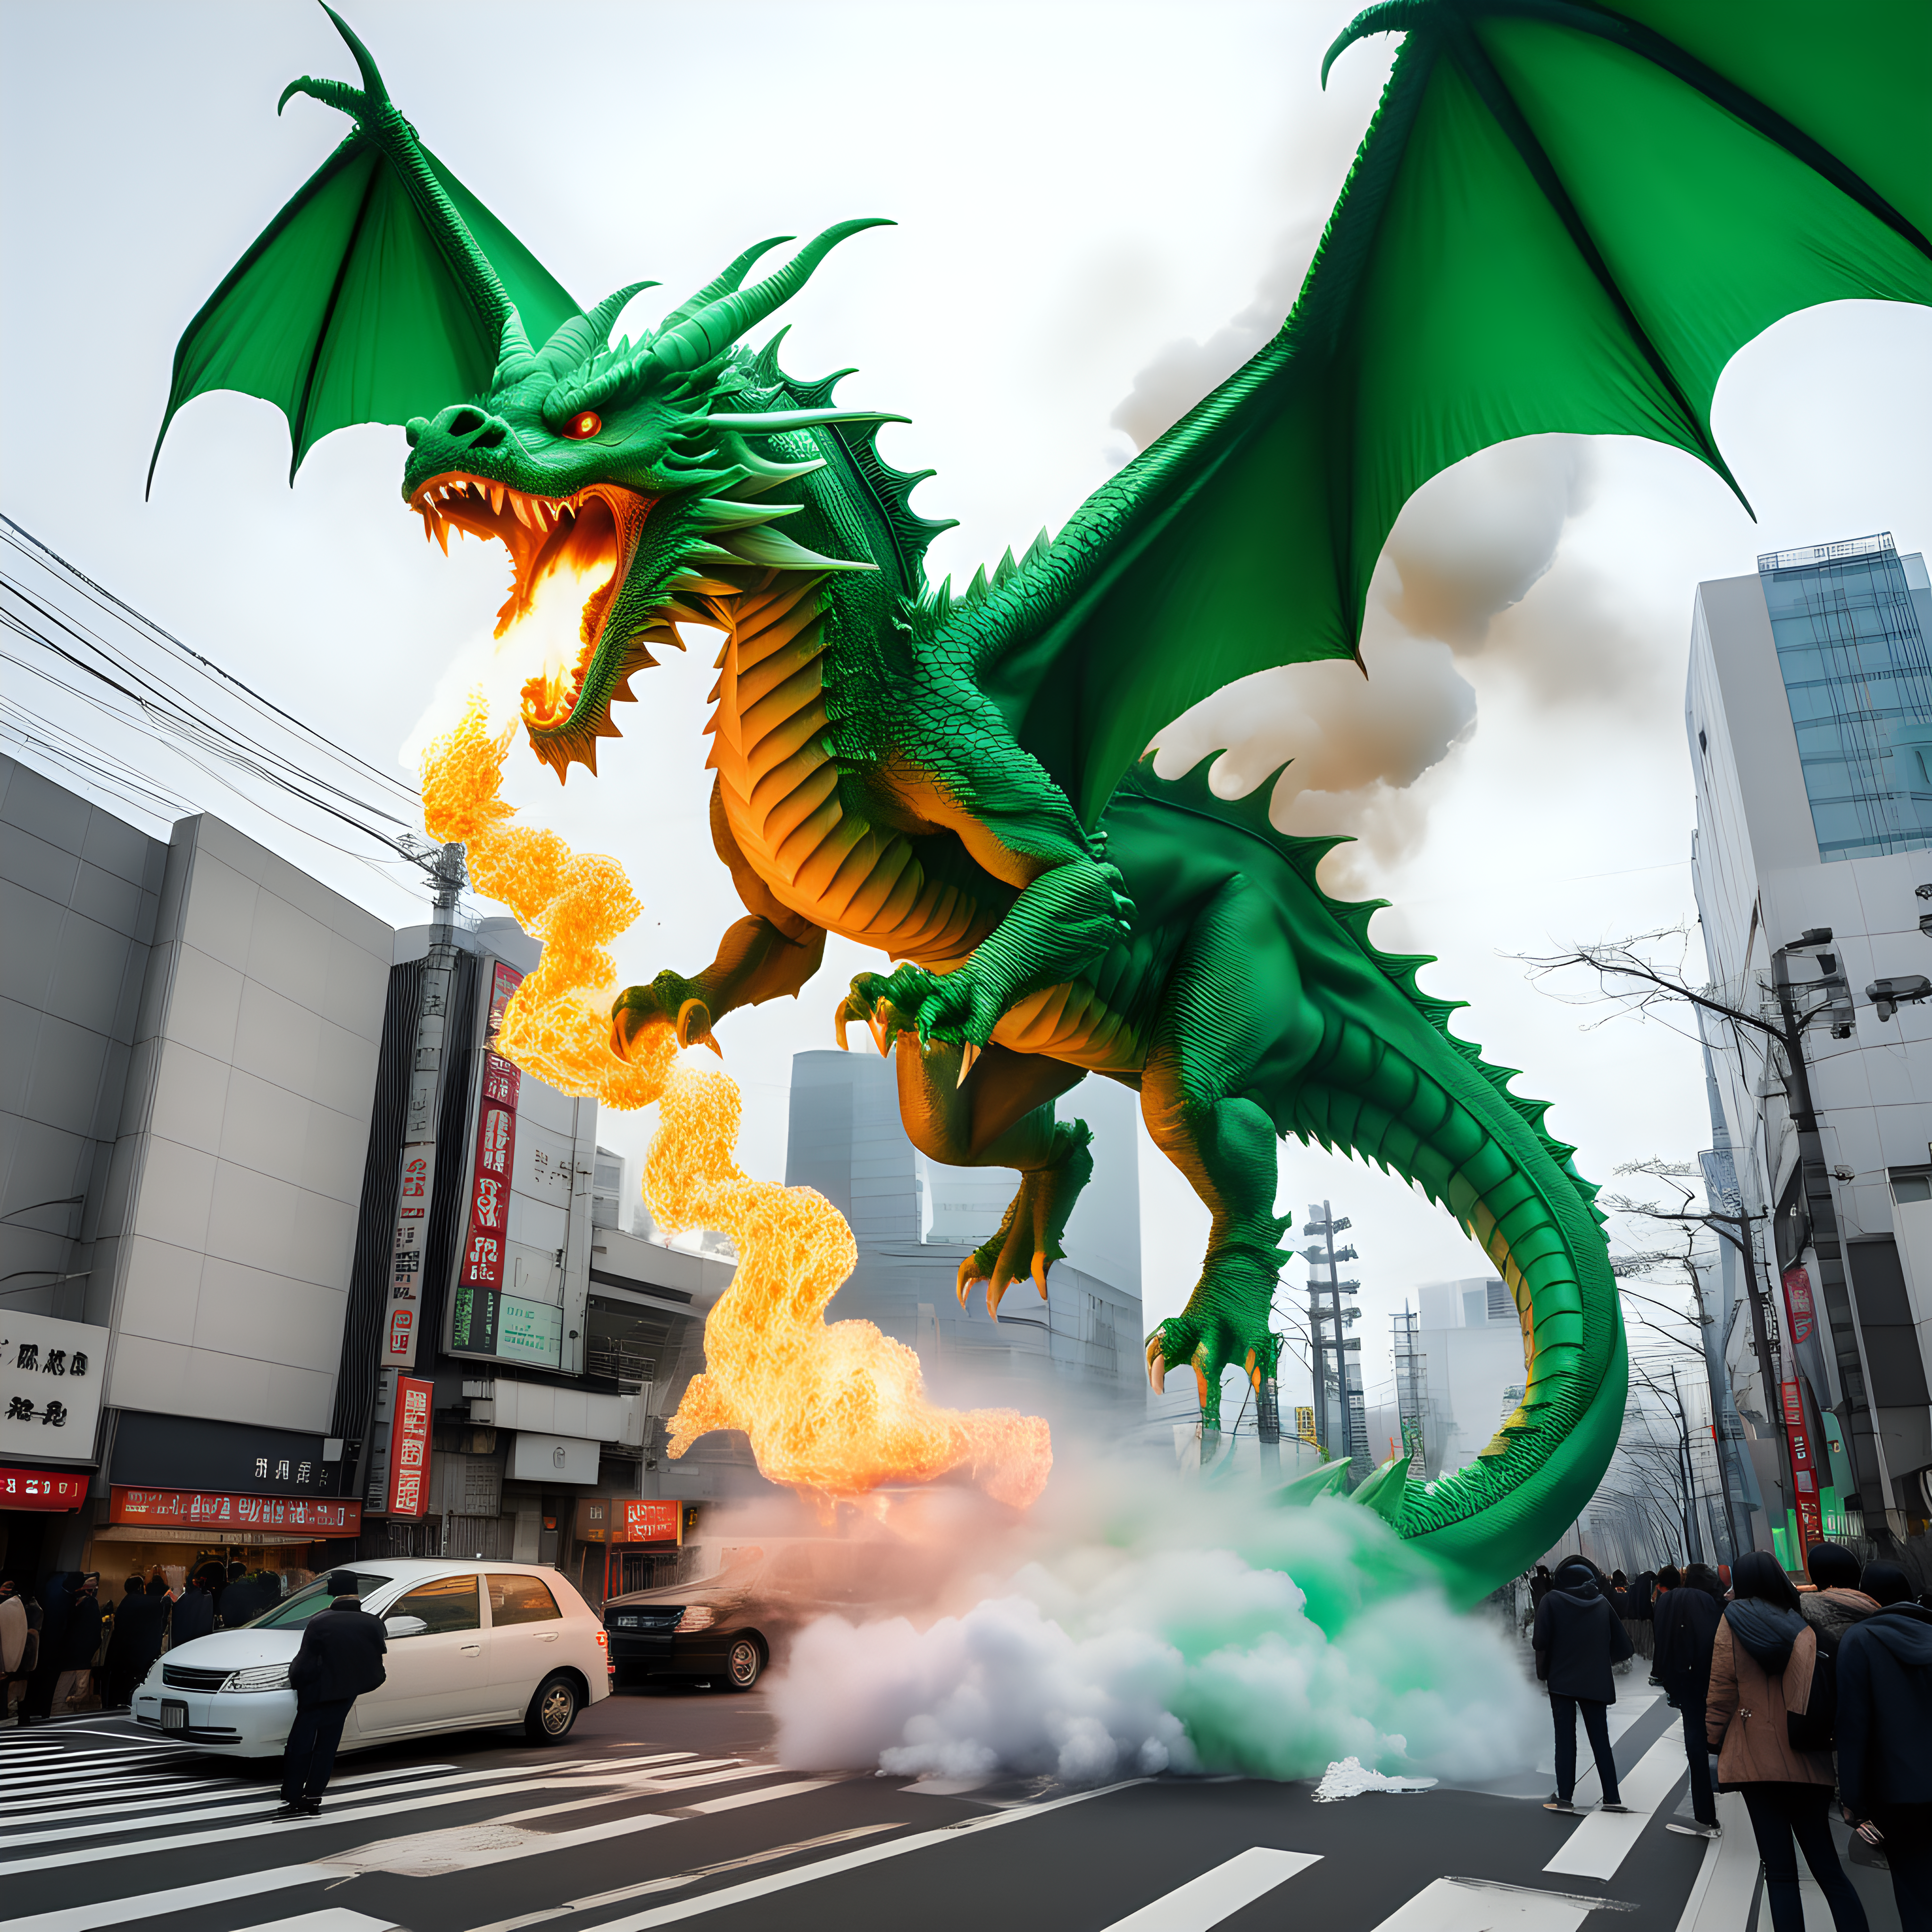 green 2 headed fire breathing dragon destroying Tokyo